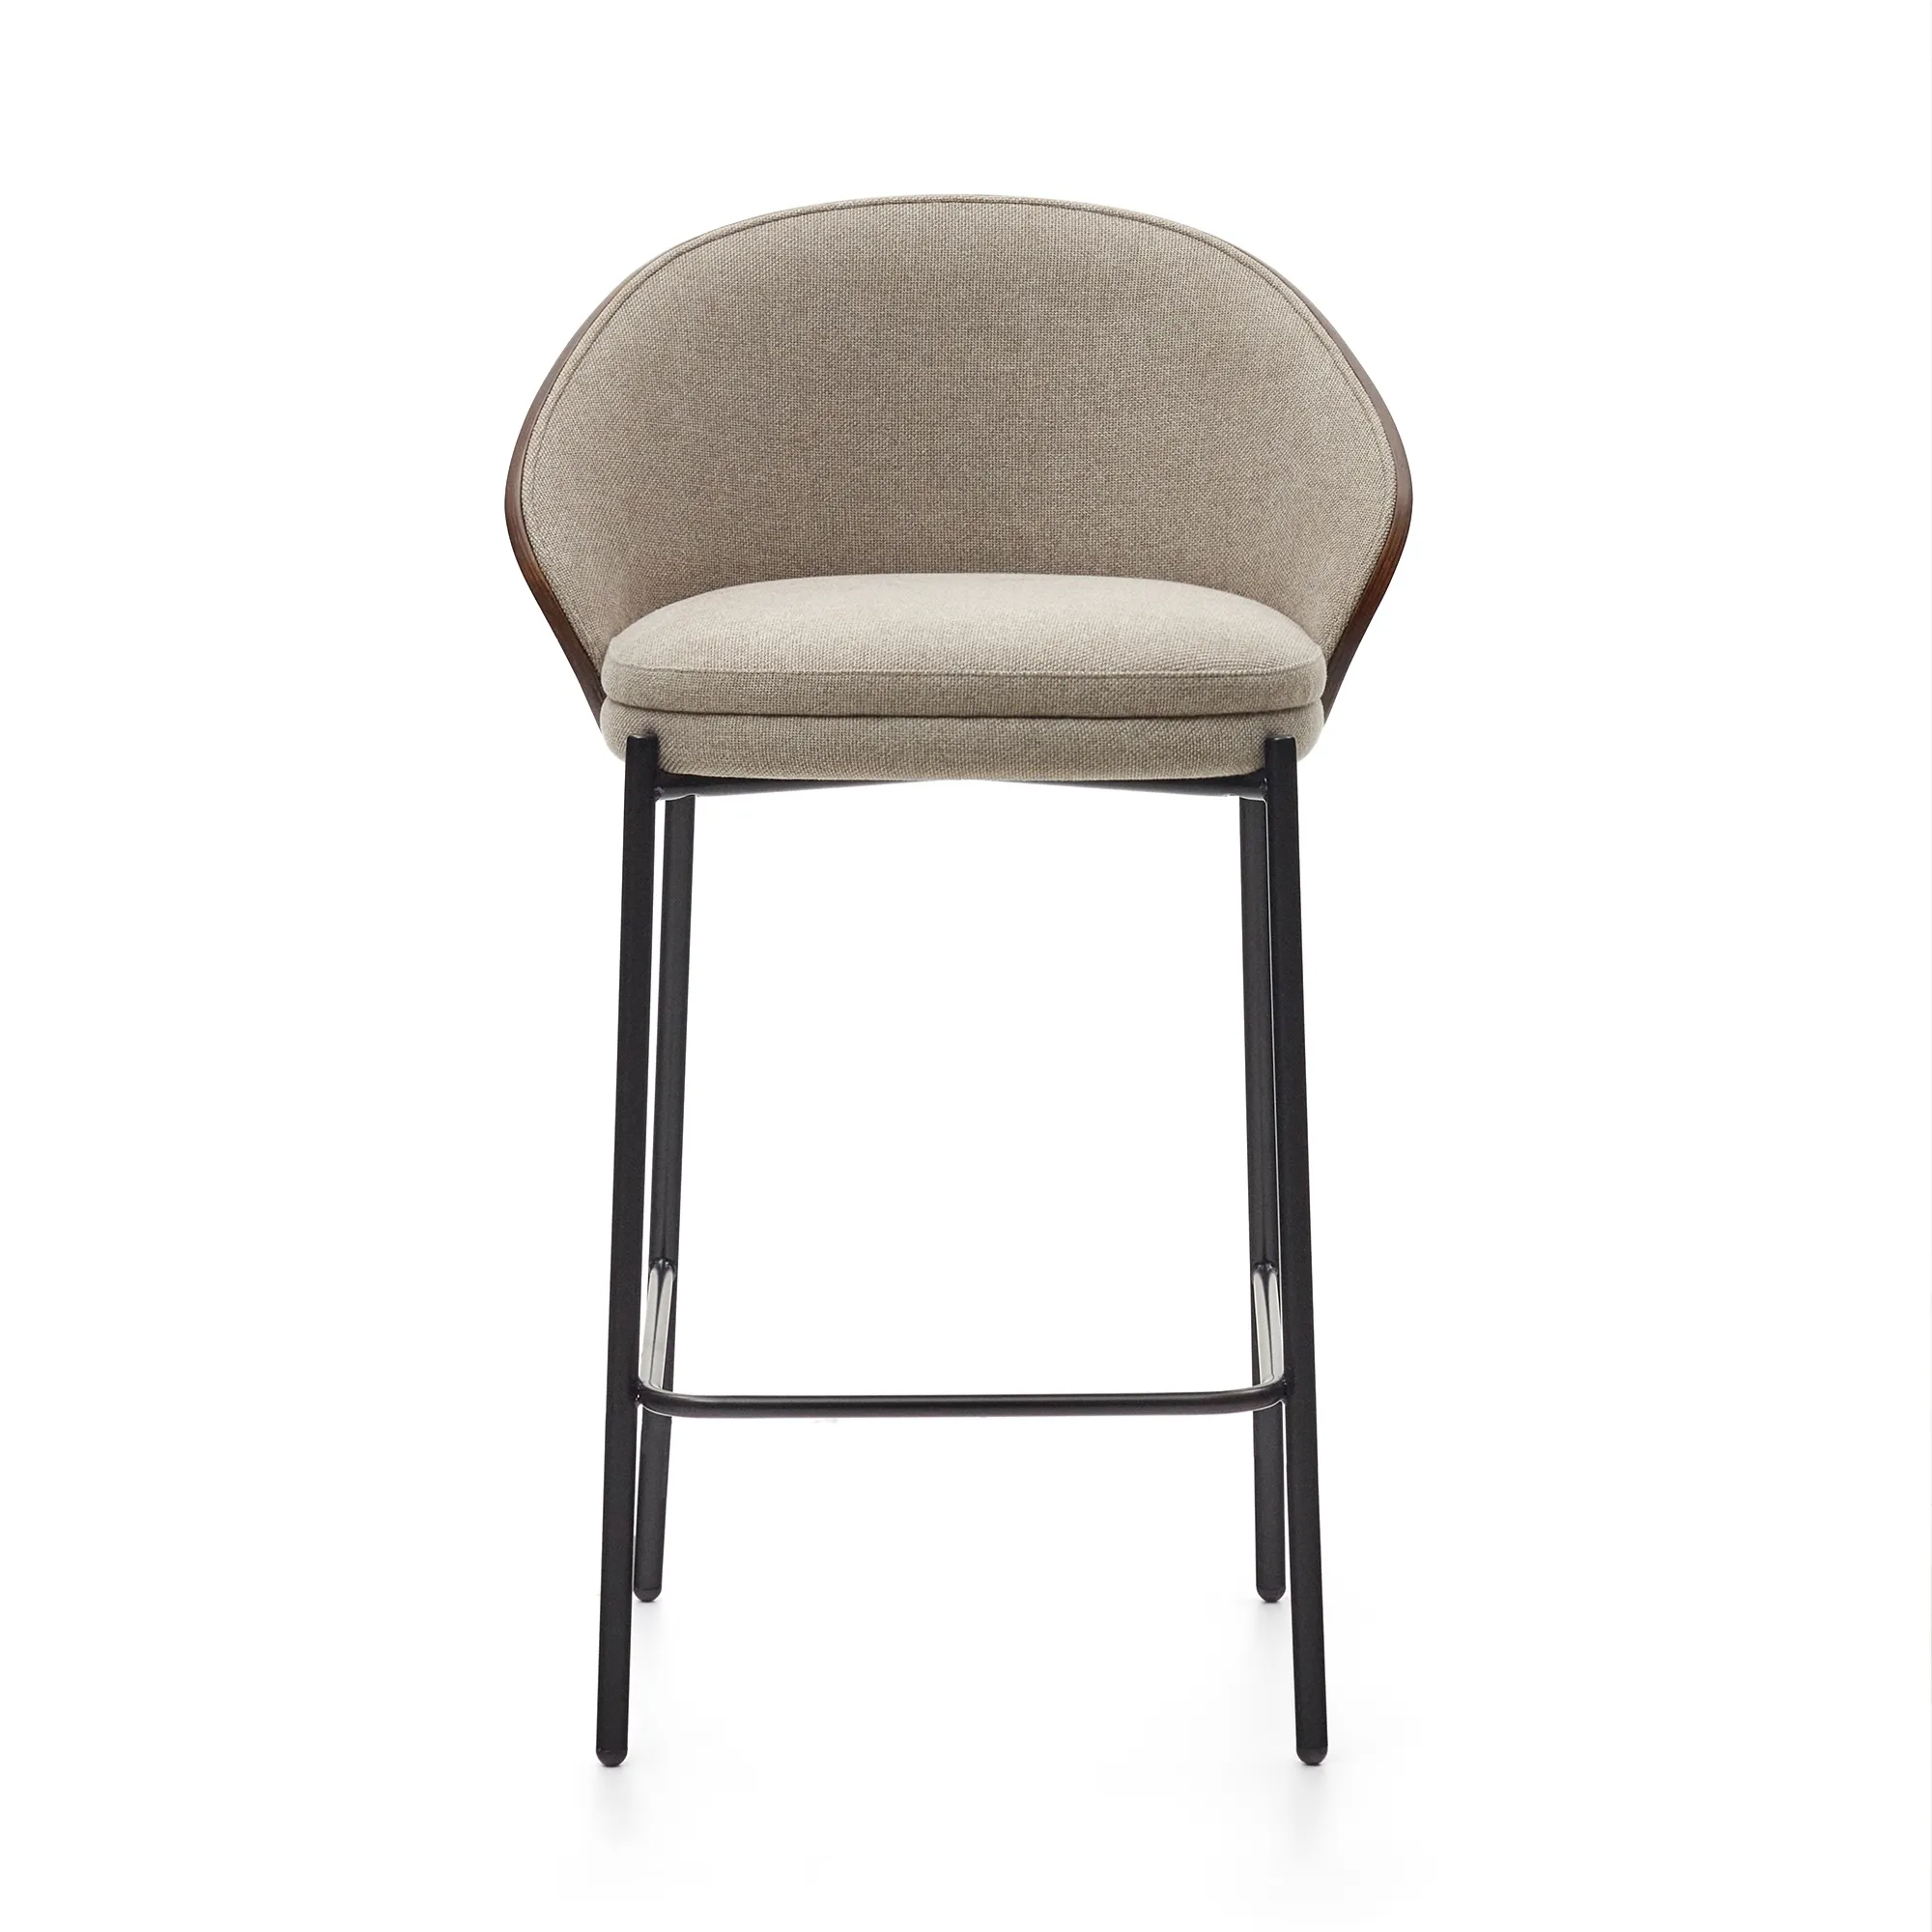 Барный стул La Forma Eamy светло-коричневый с отделкой из шпона ясеня 178072